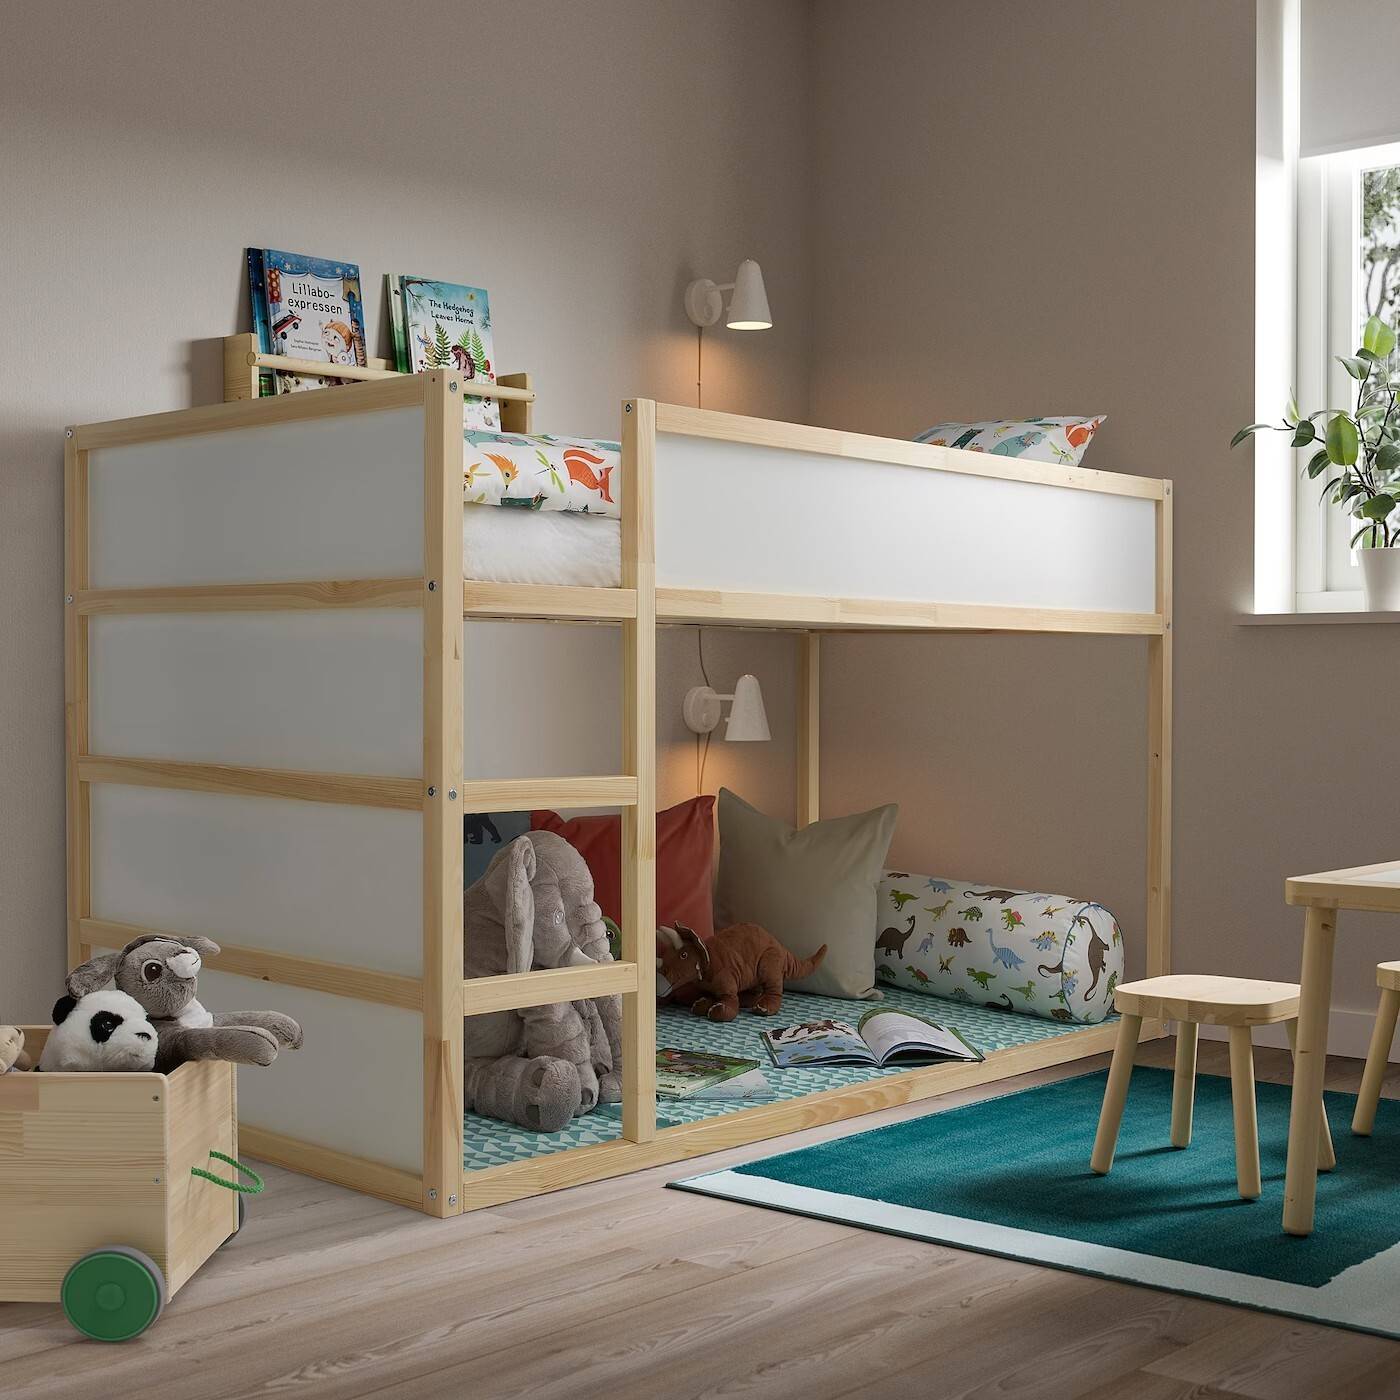 Cama infantil de IKEA modelo KURA.